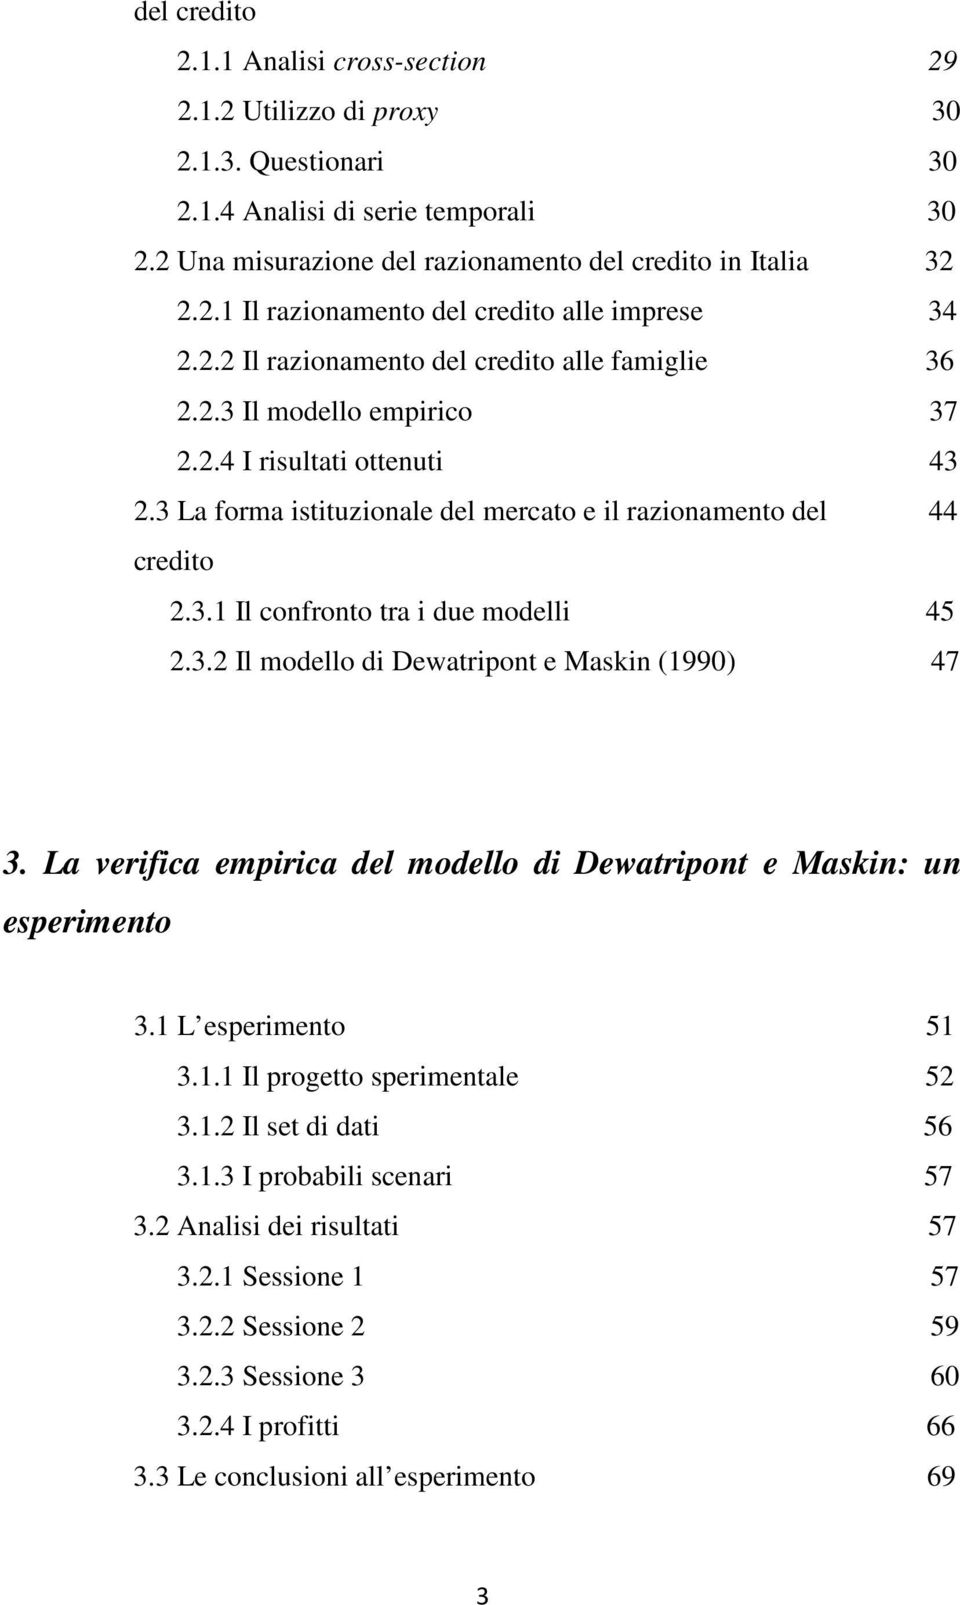 3.2 Il modello di Dewatripont e Maskin (1990) 47 3. La verifica empirica del modello di Dewatripont e Maskin: un esperimento 3.1 L esperimento 51 3.1.1 Il progetto sperimentale 52 3.1.2 Il set di dati 56 3.